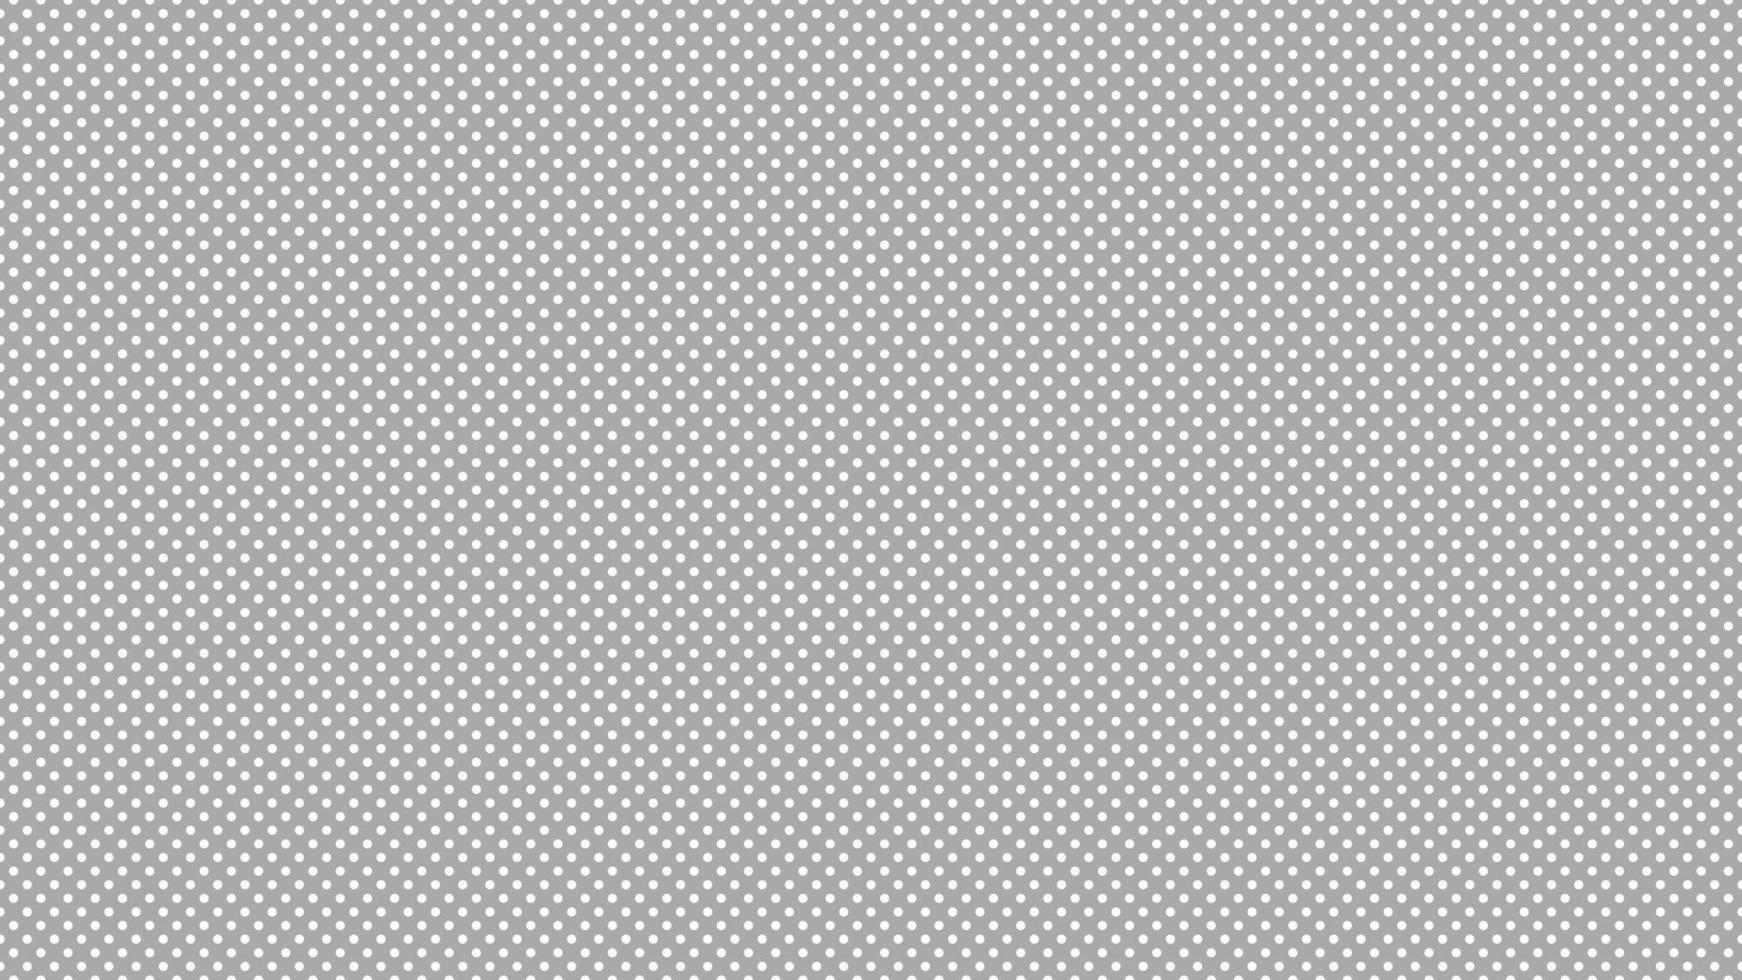 Weiß Farbe Polka Punkte Über dunkel grau Hintergrund vektor